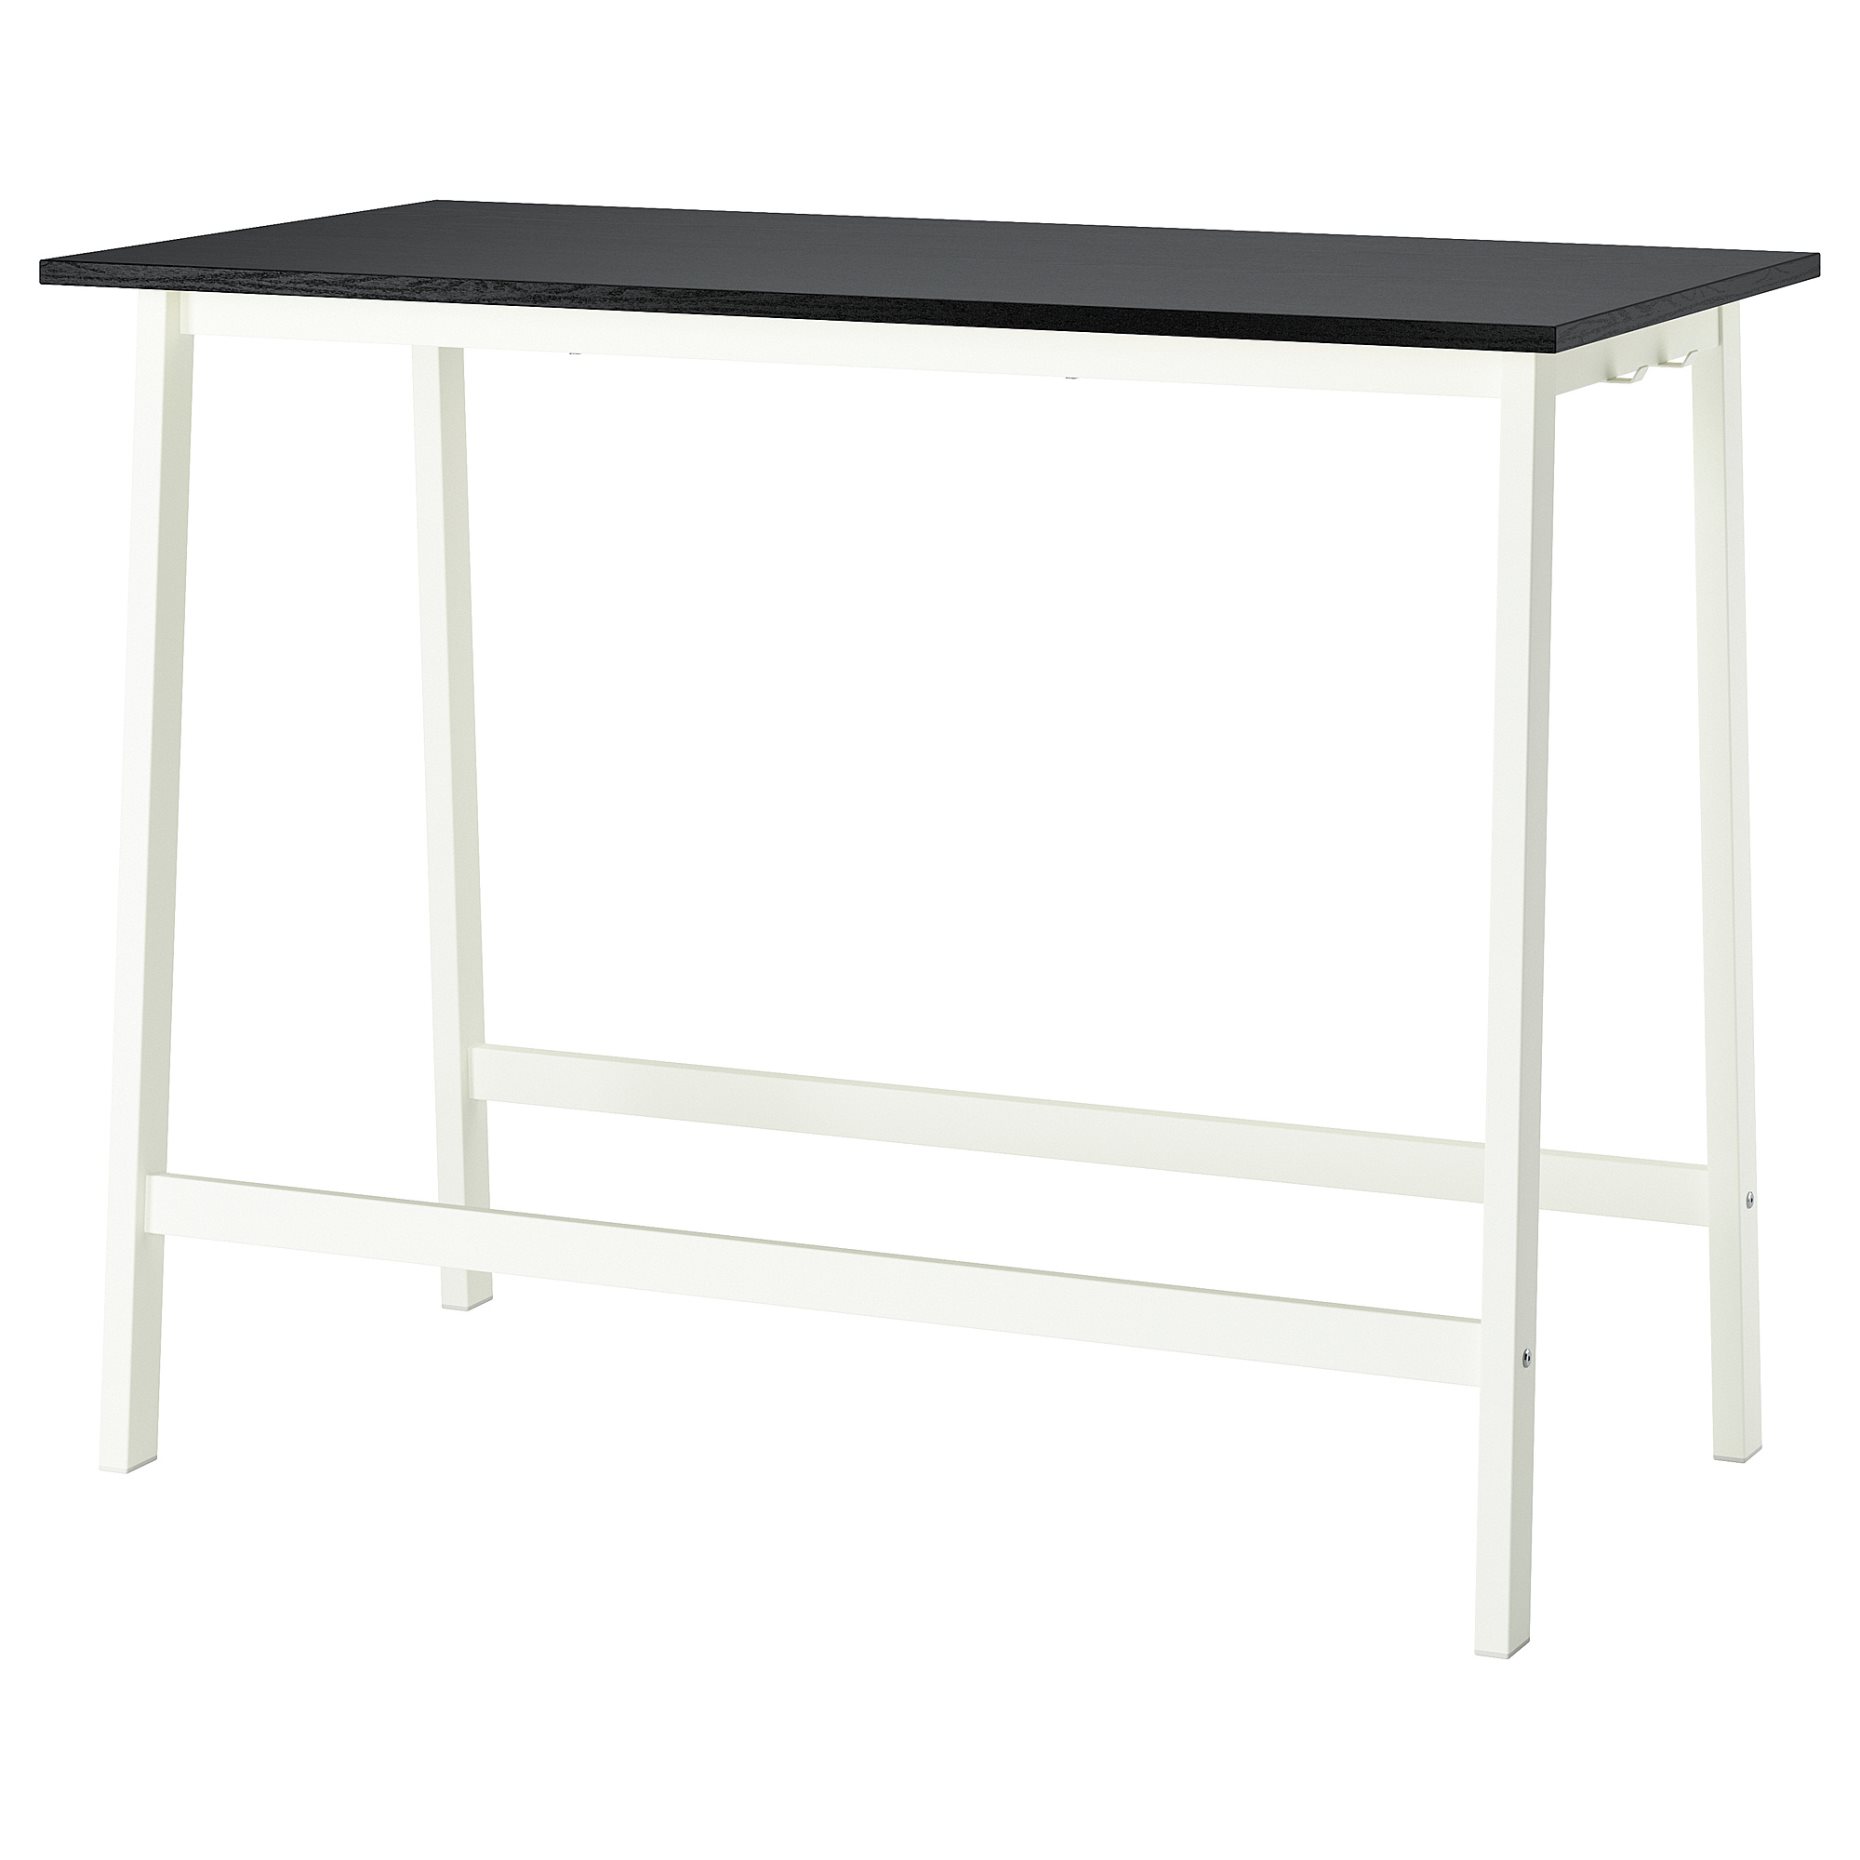 MITTZON, table top, 140x68 cm, 705.277.58